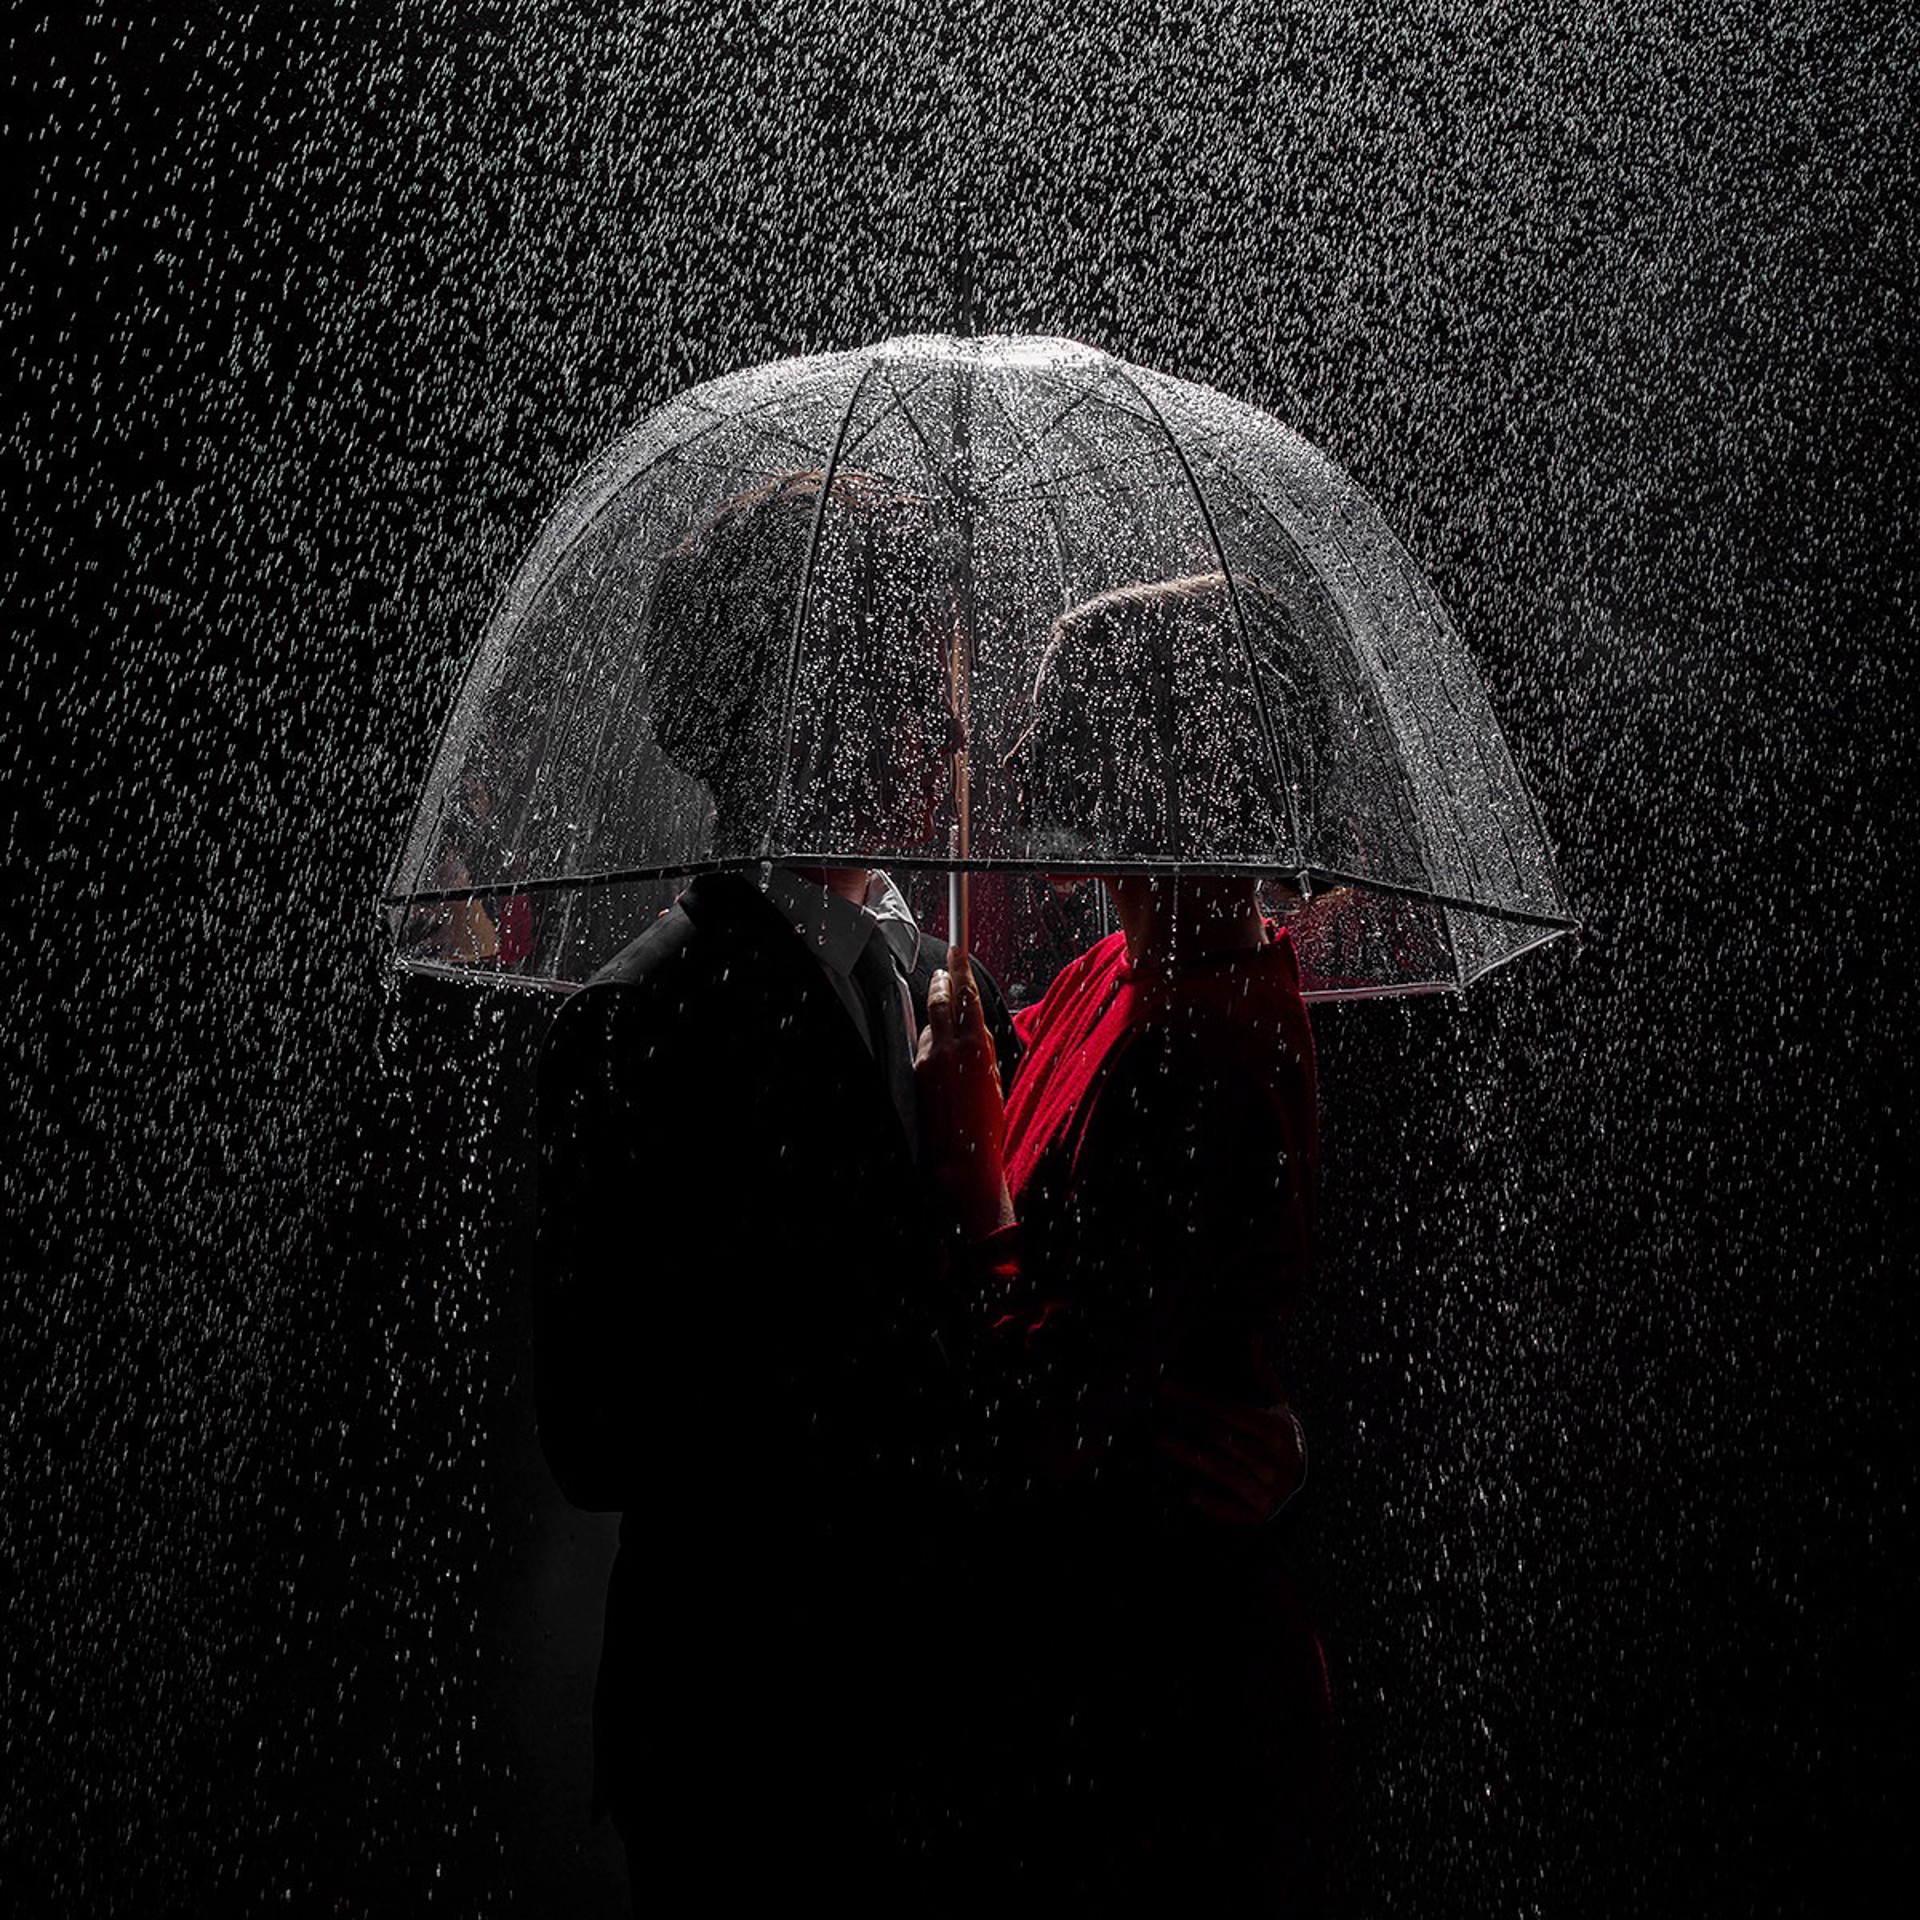 Under the Rain (AP1) by Tyler Shields